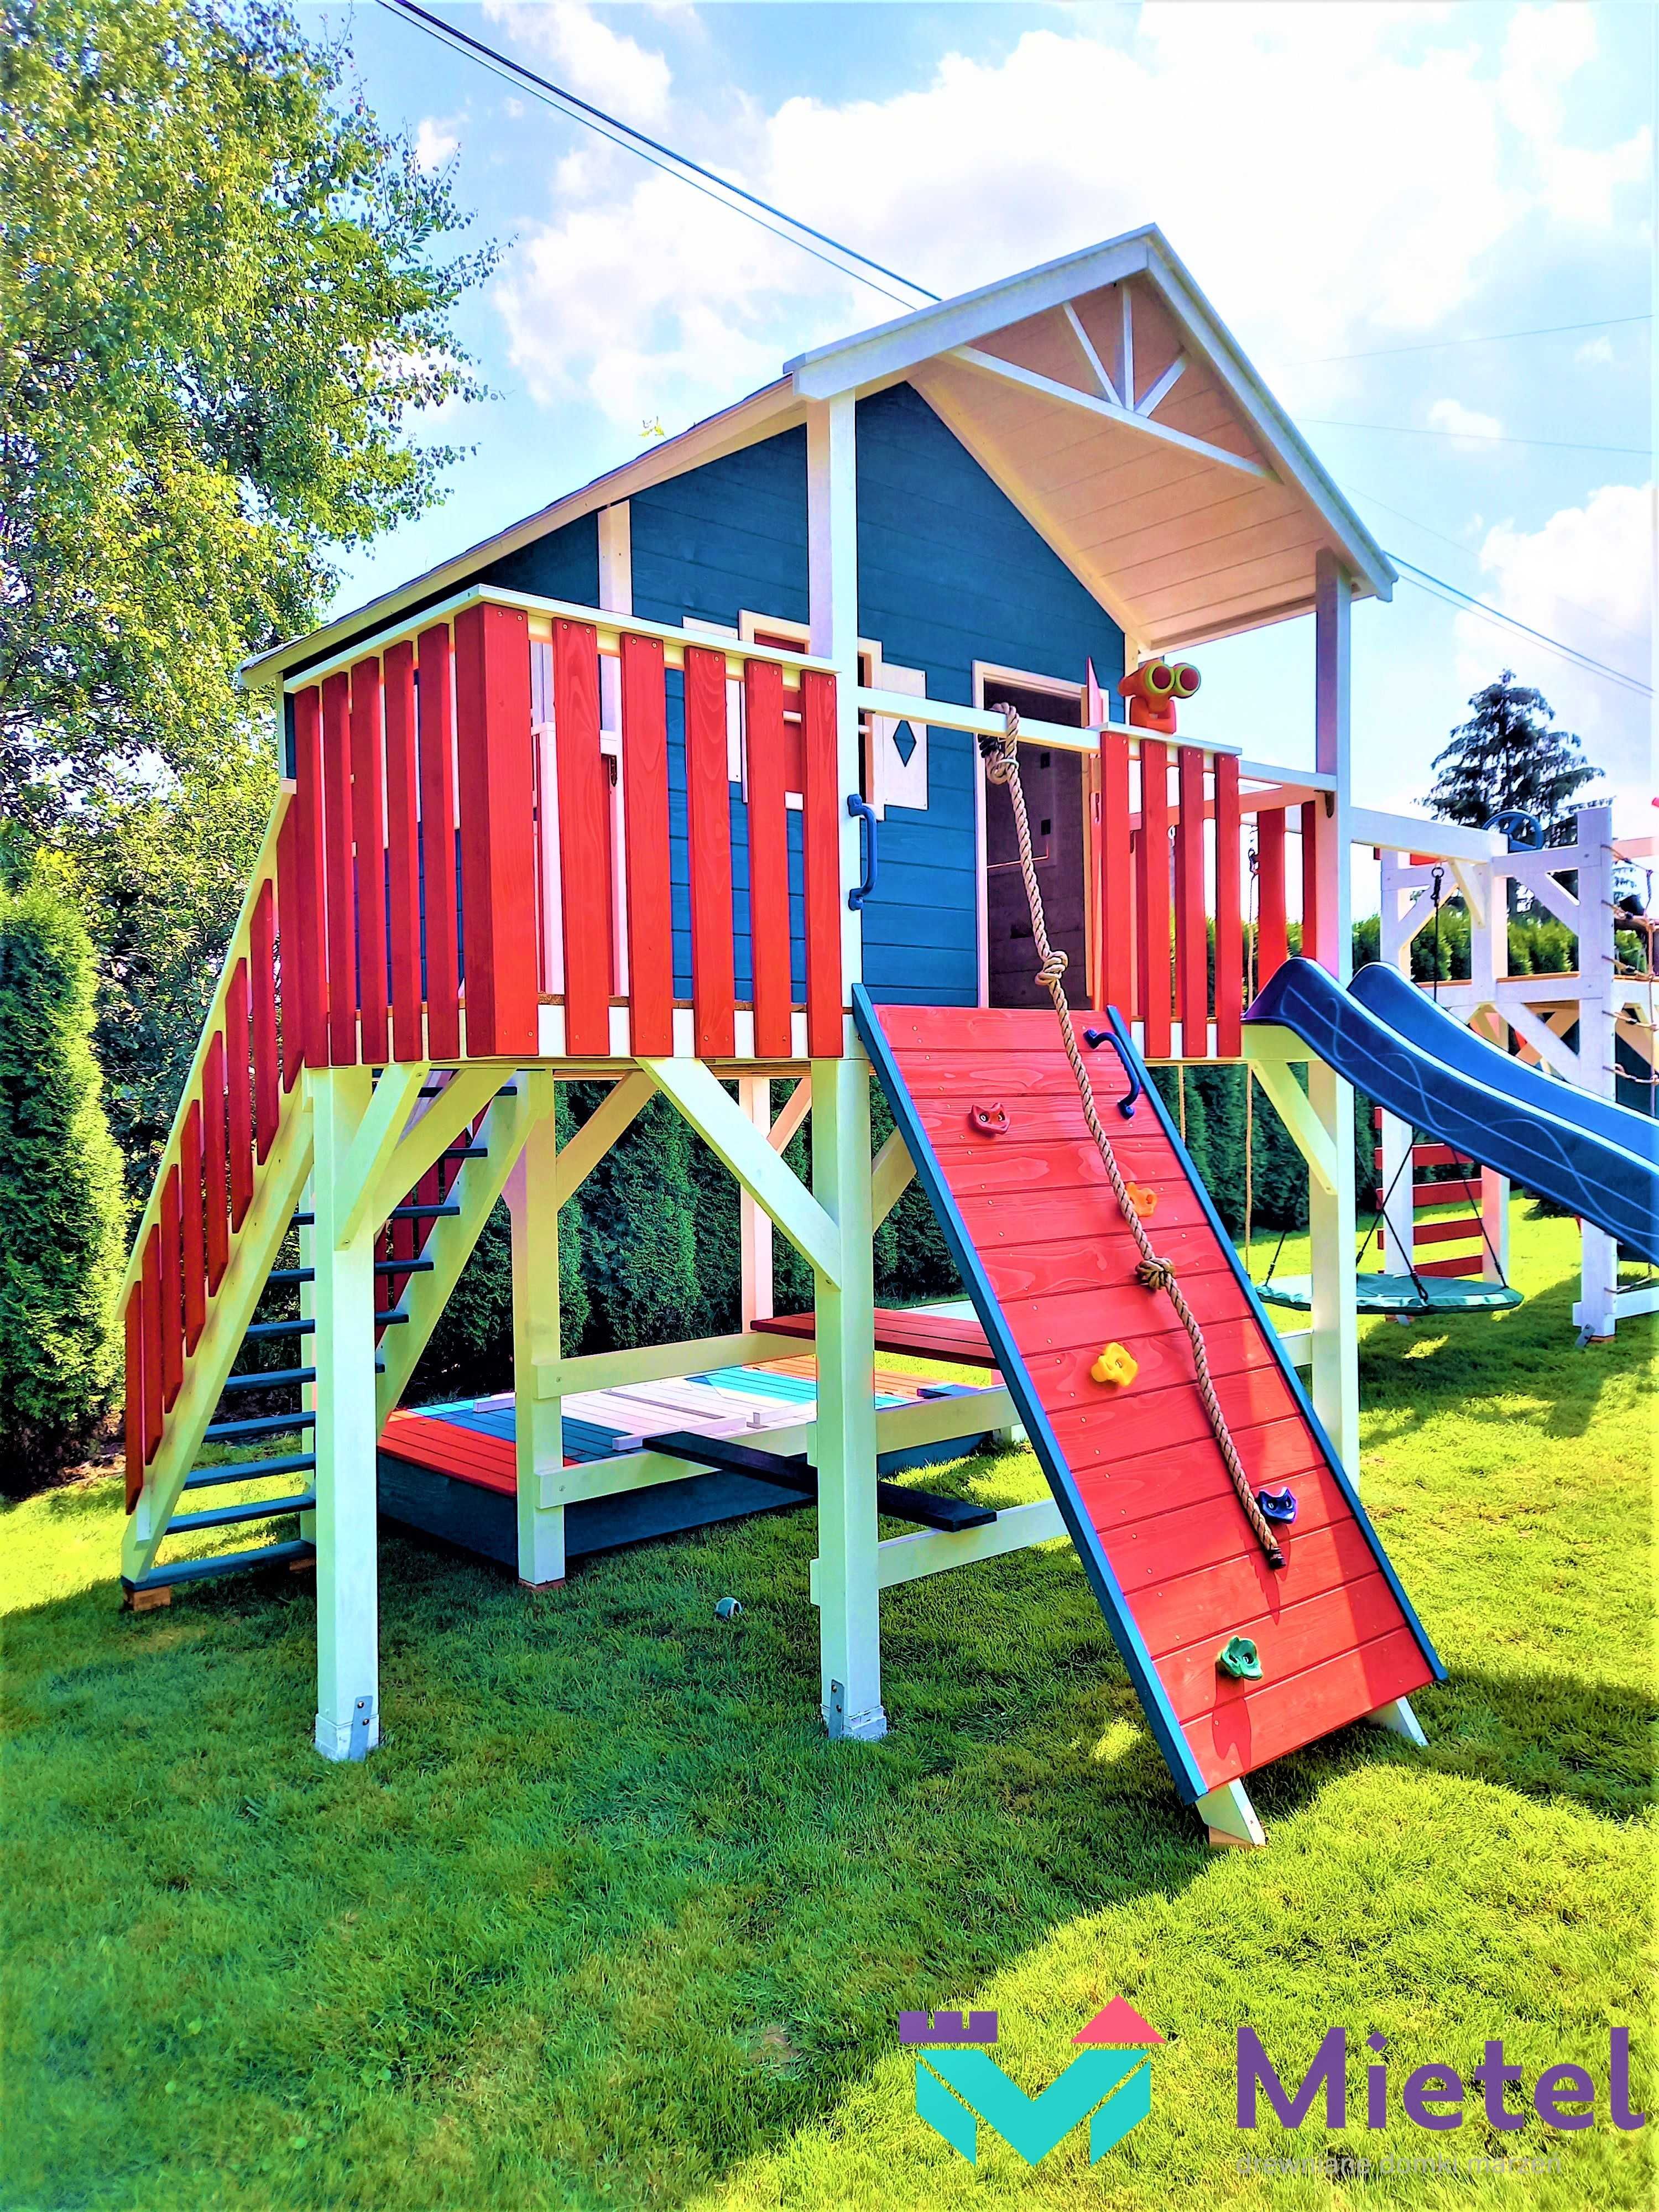 Bogato wyposażony wyjątkowy drewniany domek plac zabaw dla dziecka